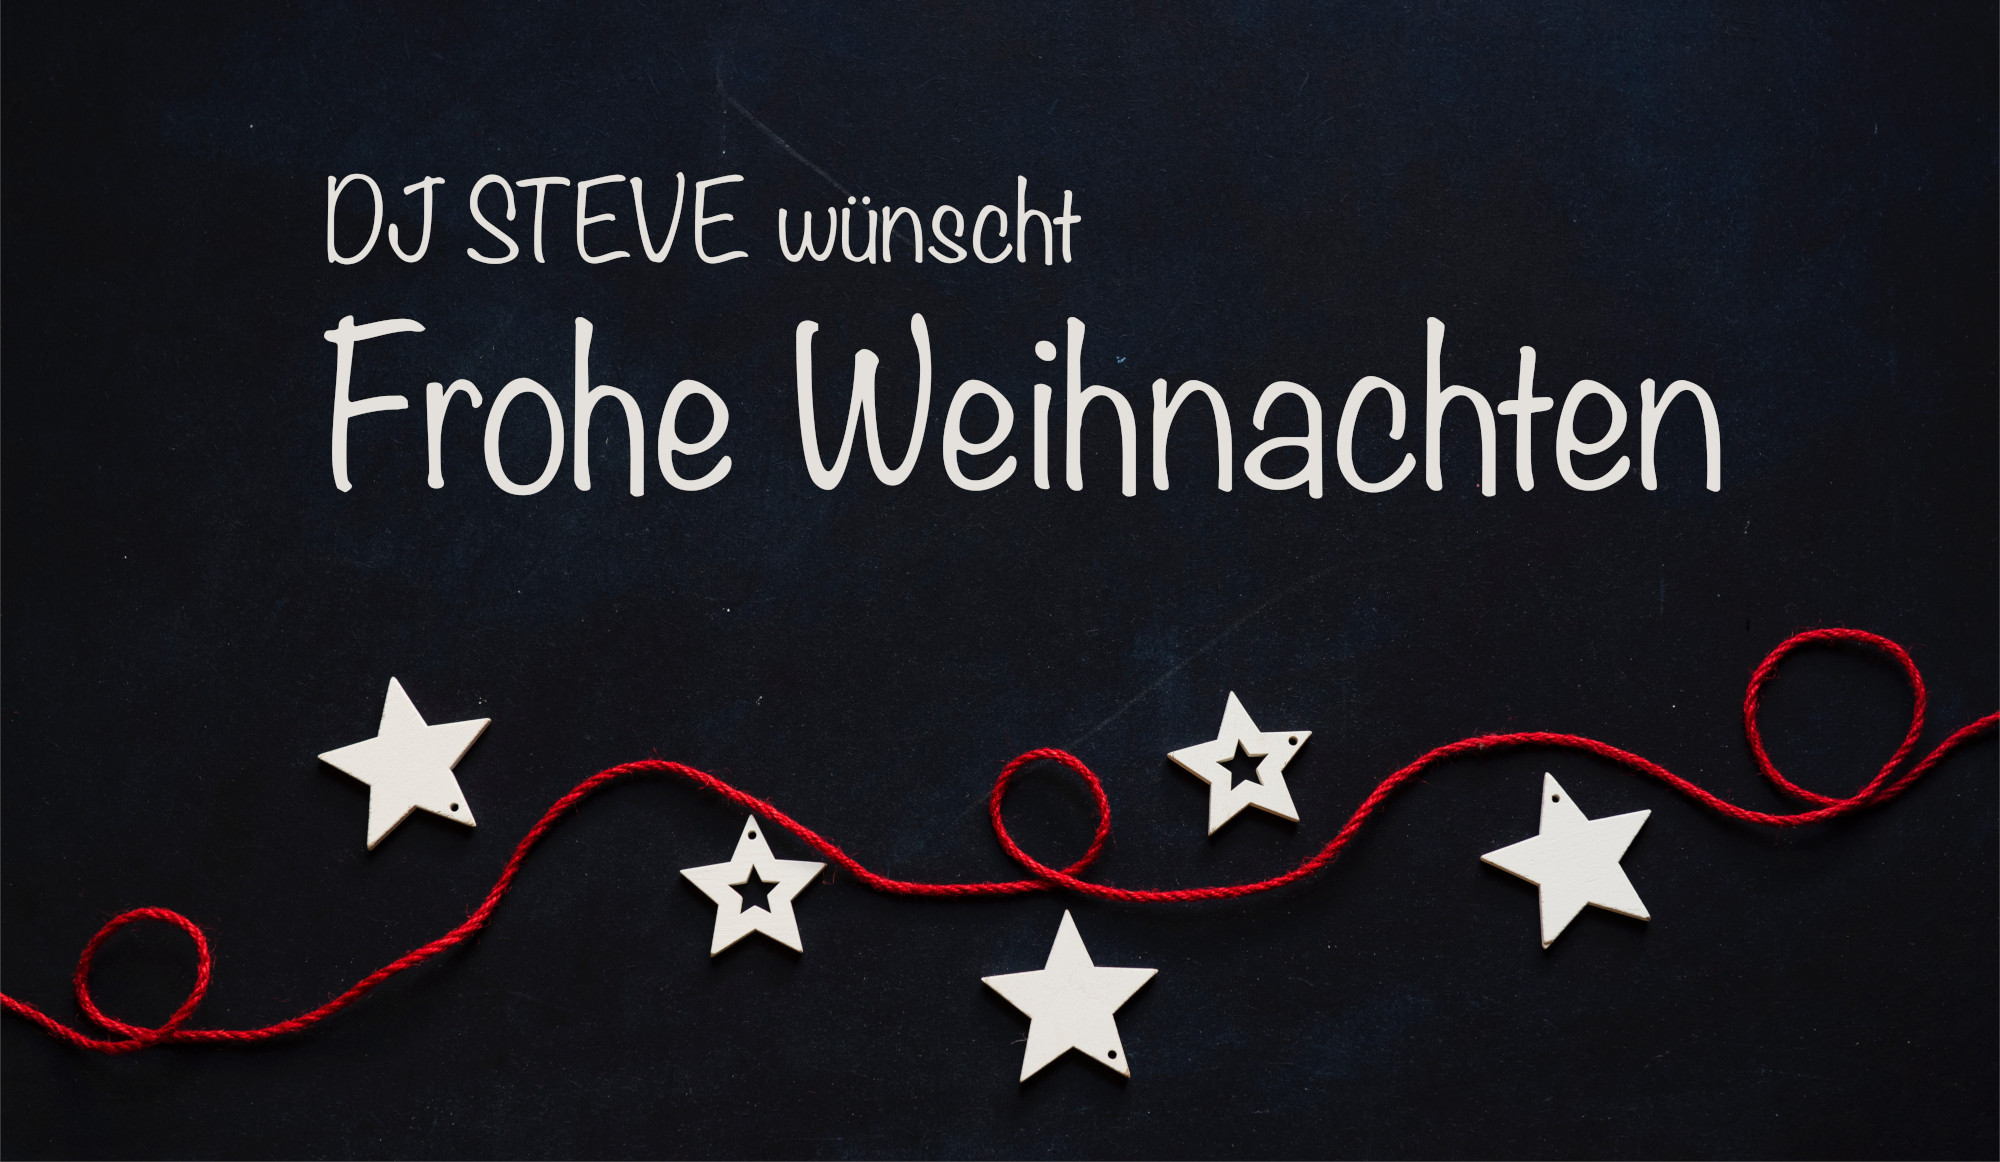 Frohe Weihnachten einen guten Rutsch ins neue Jahr wünscht DJ Steve